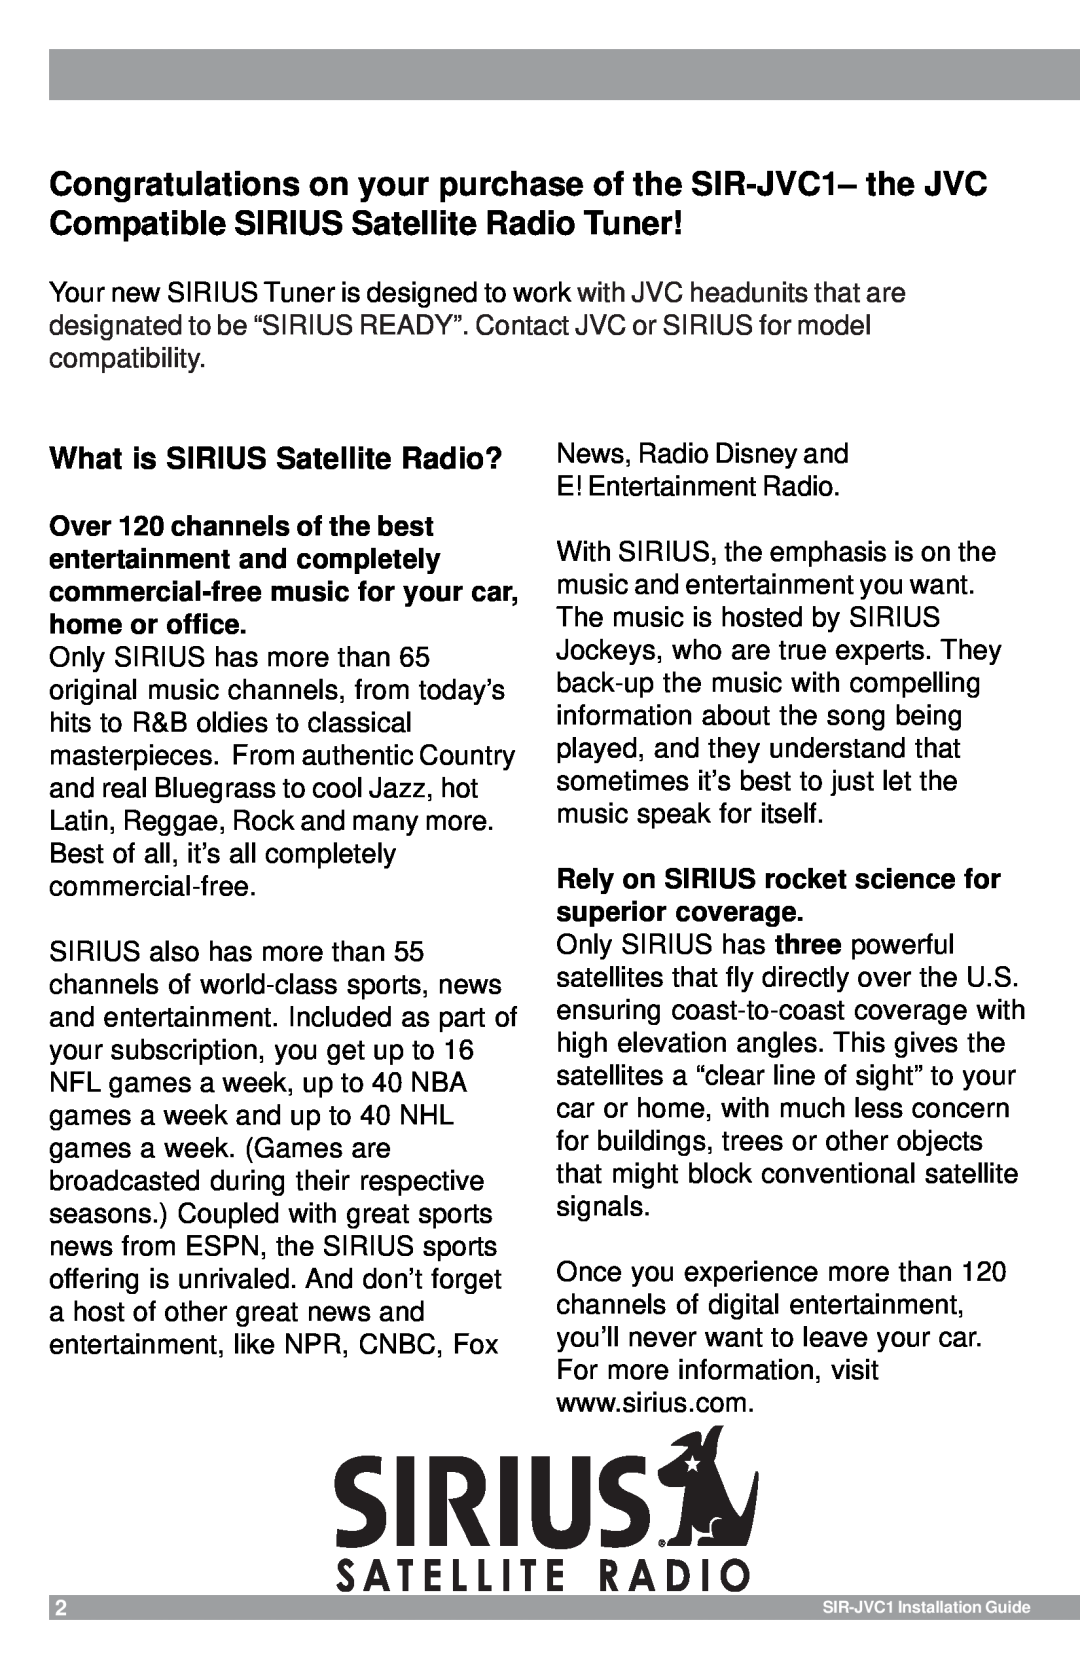 Sirius Satellite Radio SIR-JVC1 manual What is SIRIUS Satellite Radio? 